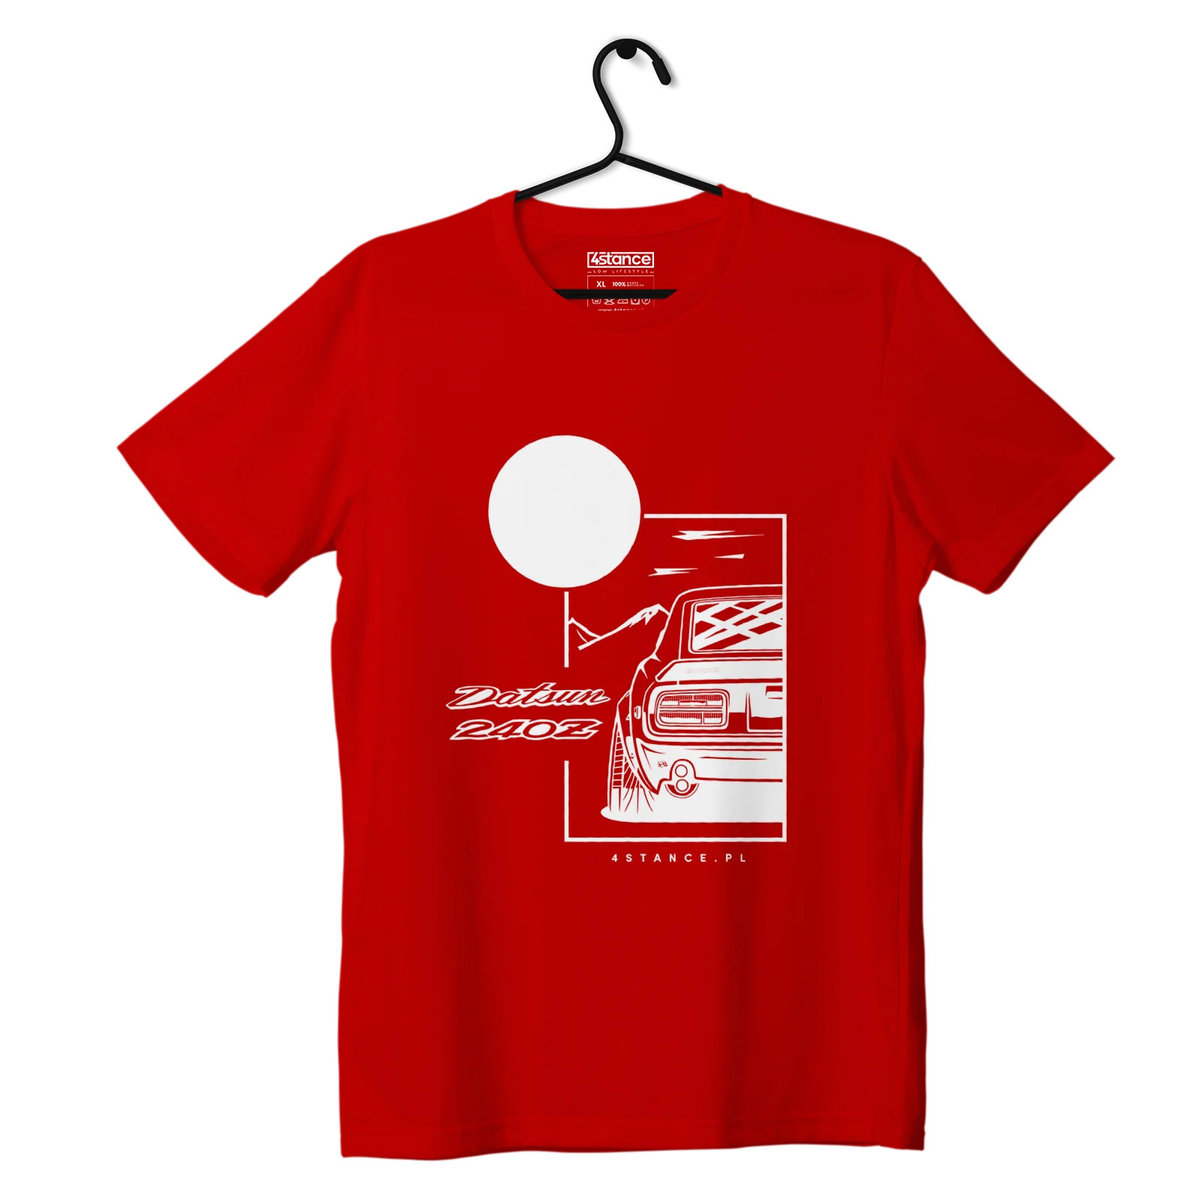 Zdjęcia - Odzież motocyklowa Datsun T-shirt koszulka  240Z czerwona-XXL 